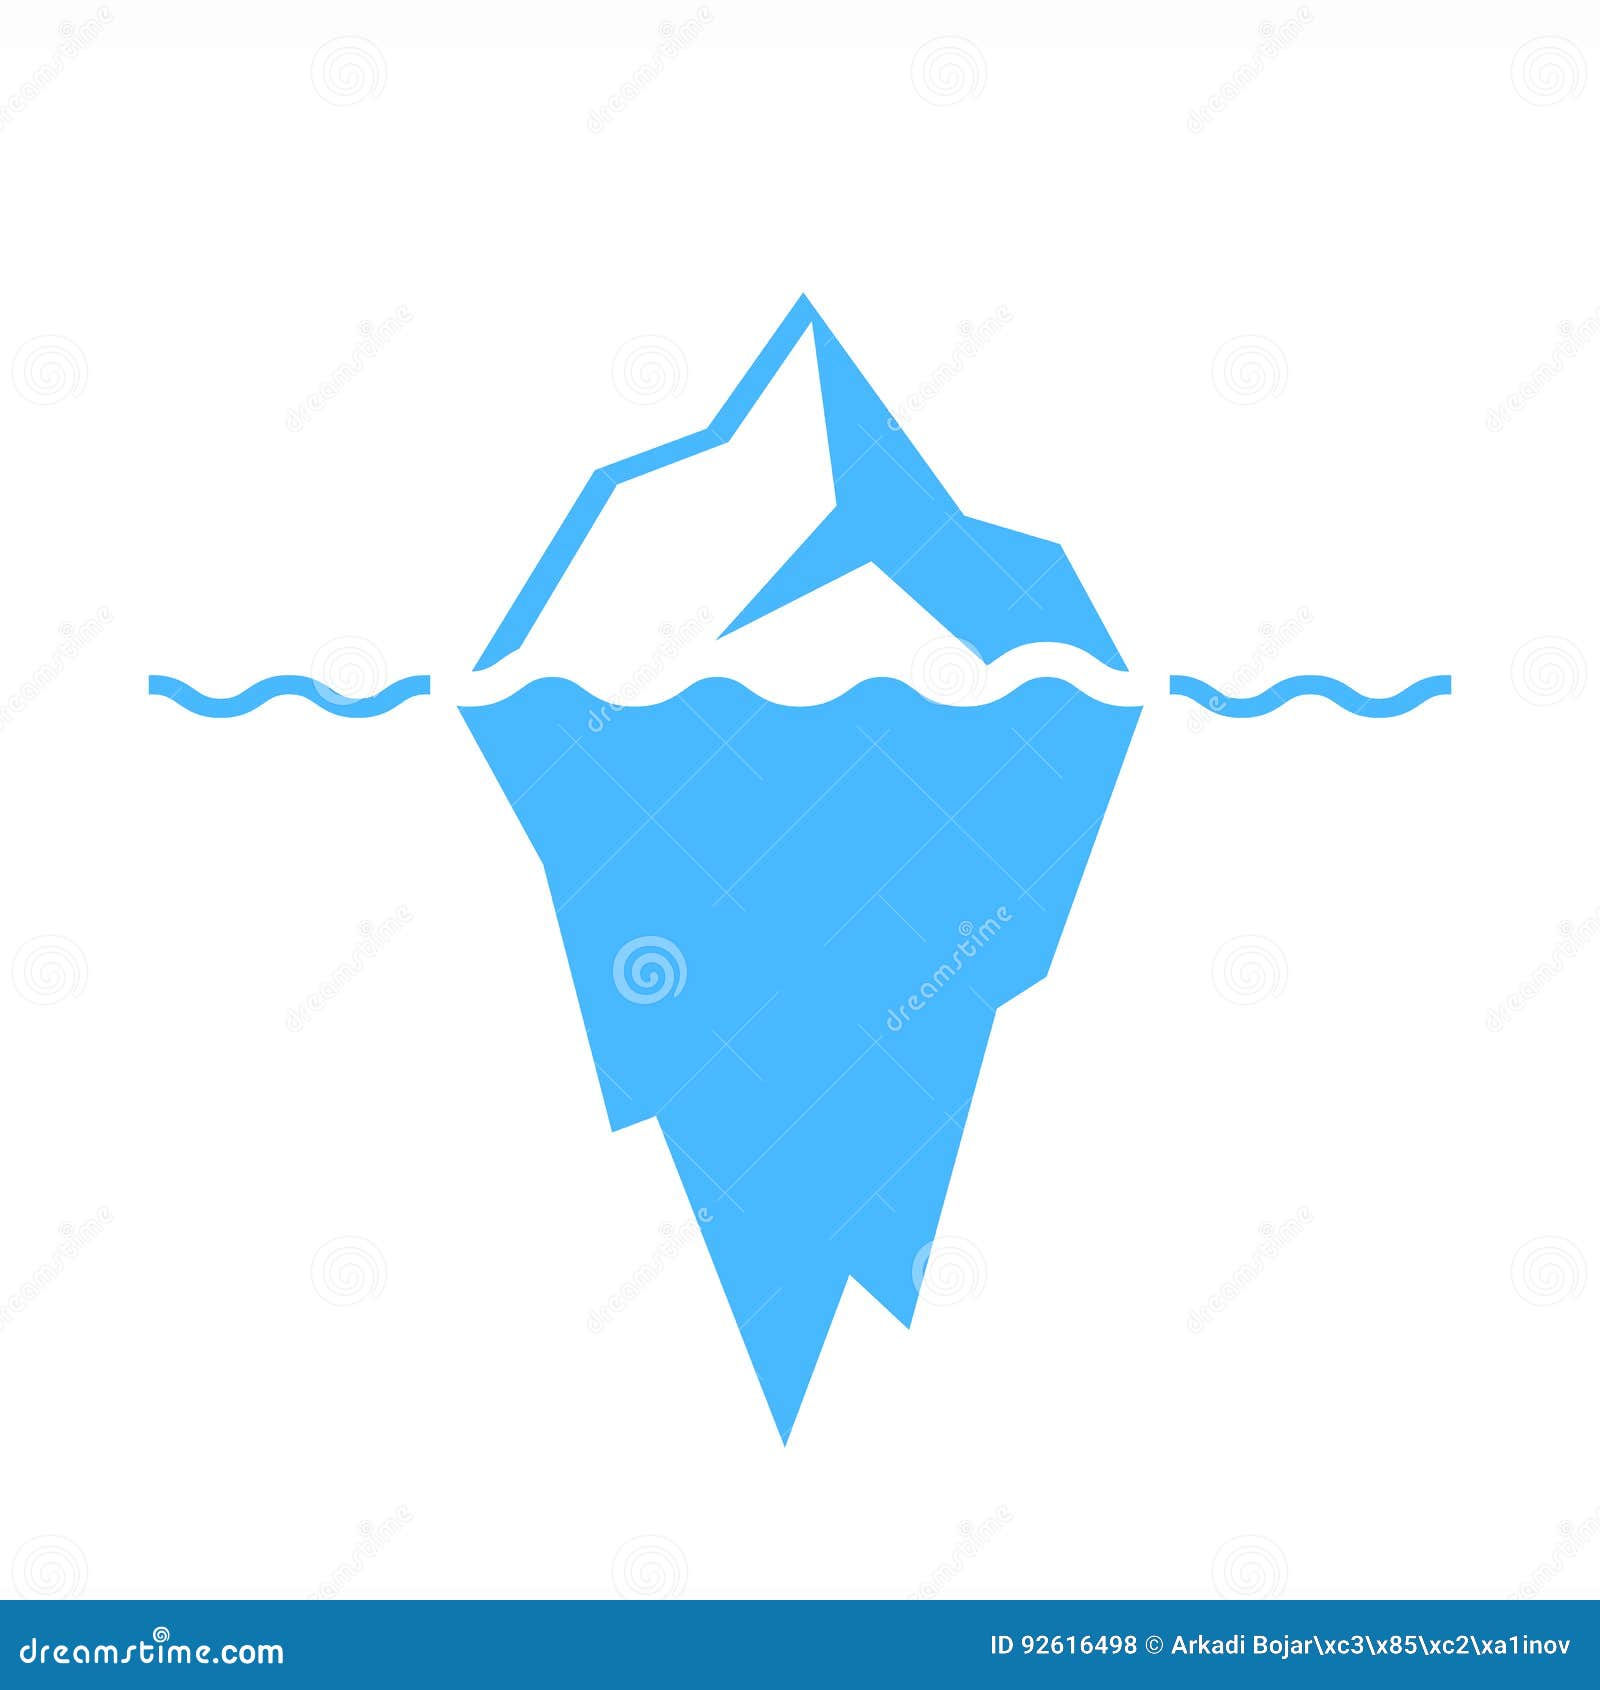 iceberg  icon